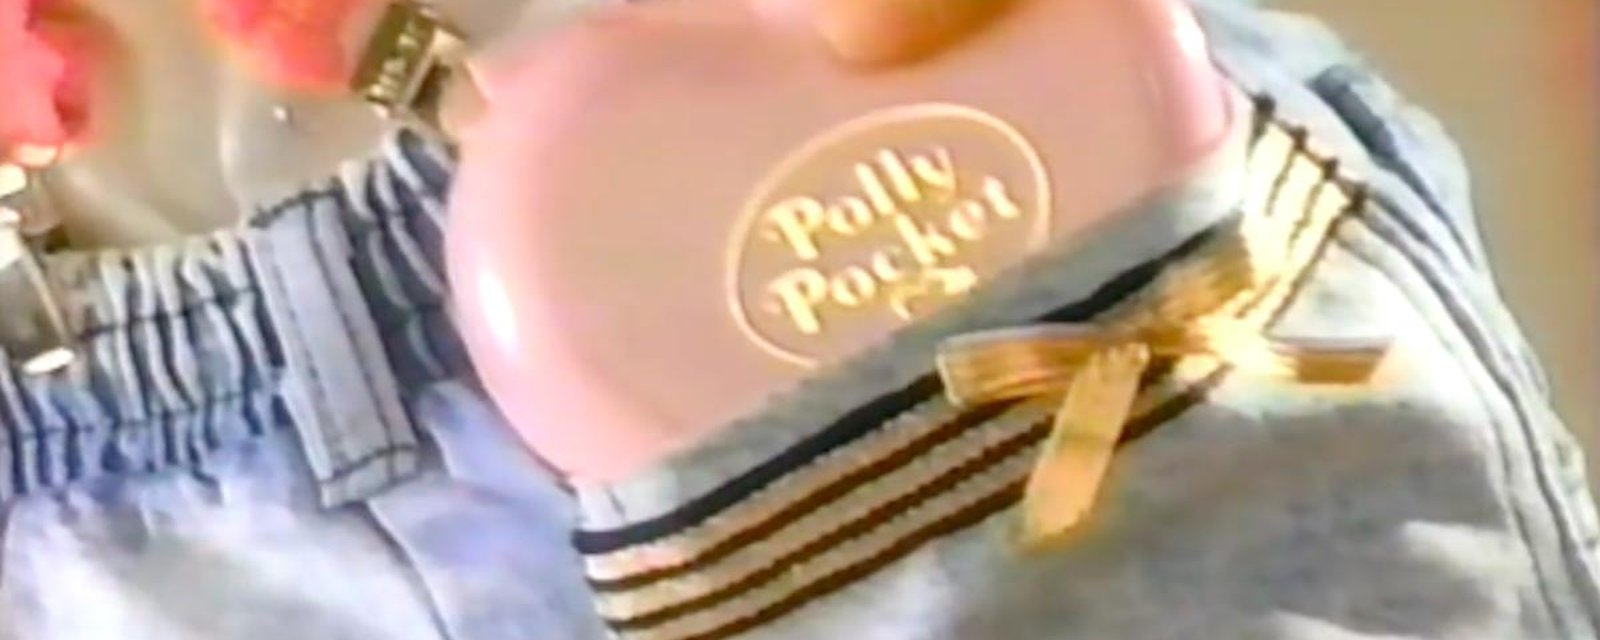 OMG! Les Polly Pocket sont de retour!